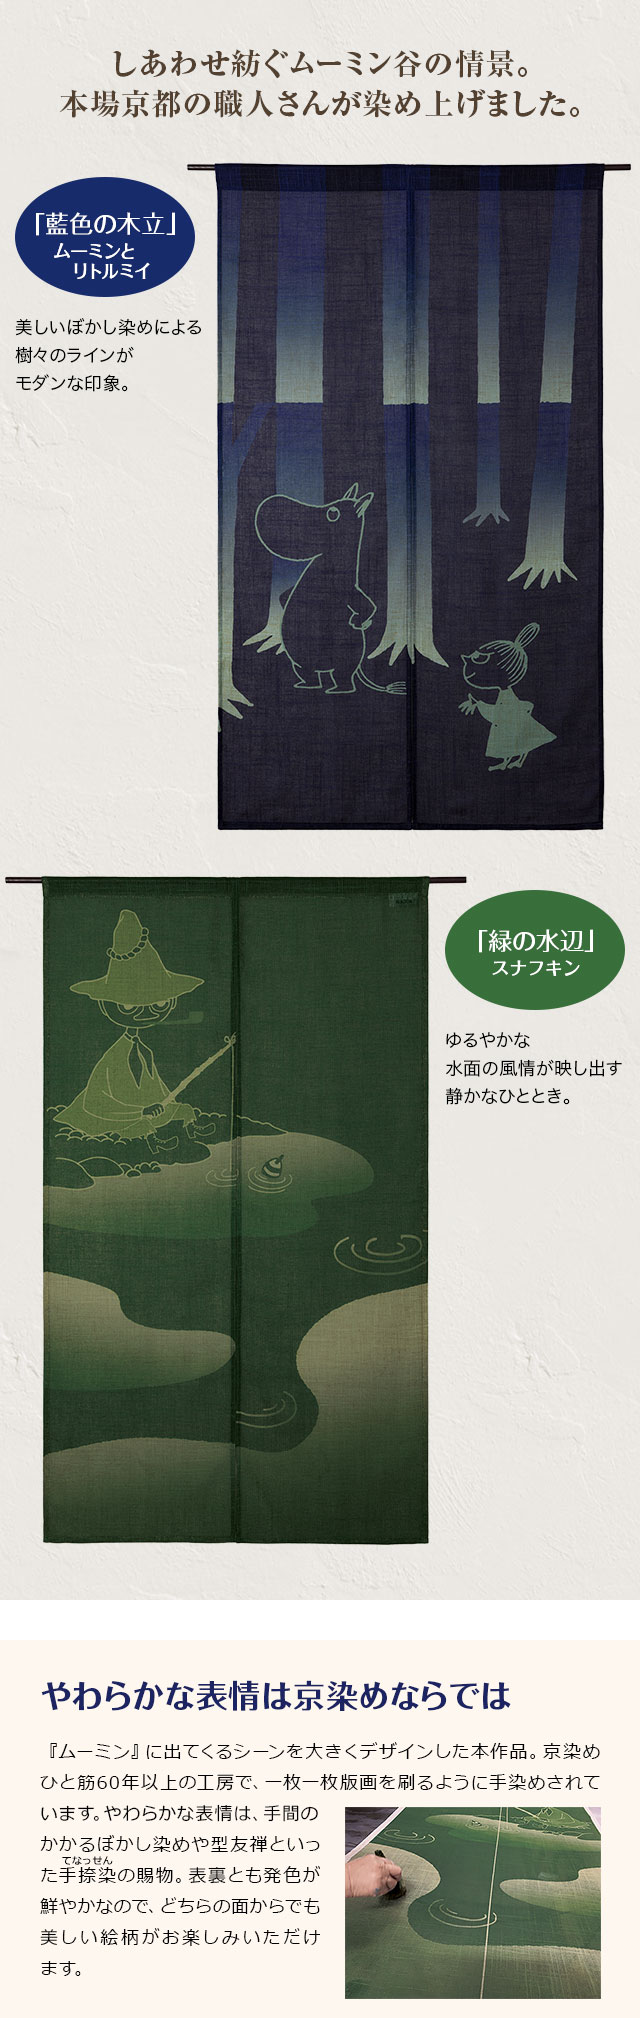 しあわせ紡ぐムーミン谷の情景。本場京都の職人さんが染め上げました。／「藍色の木立」ムーミンとリトルミイ：美しいぼかし染めによる、樹々のラインがモダンな印象。／「緑の水辺」スナフキン：ゆるやかな水面の風情が映し出す静かなひととき。／やわらかな表情は京染めならでは：『ムーミン』に出てくるシーンを大きくデザインした本作品。京染めひと筋60年以上の工房で、一枚一枚版画を刷るように手染めされています。やわらかな表情は、手間のかかるぼかし染めや型友禅といった手捺染の賜物。表裏とも発色が鮮やかなので、どちらの面からでも美しい絵柄がお楽しみいただけます。